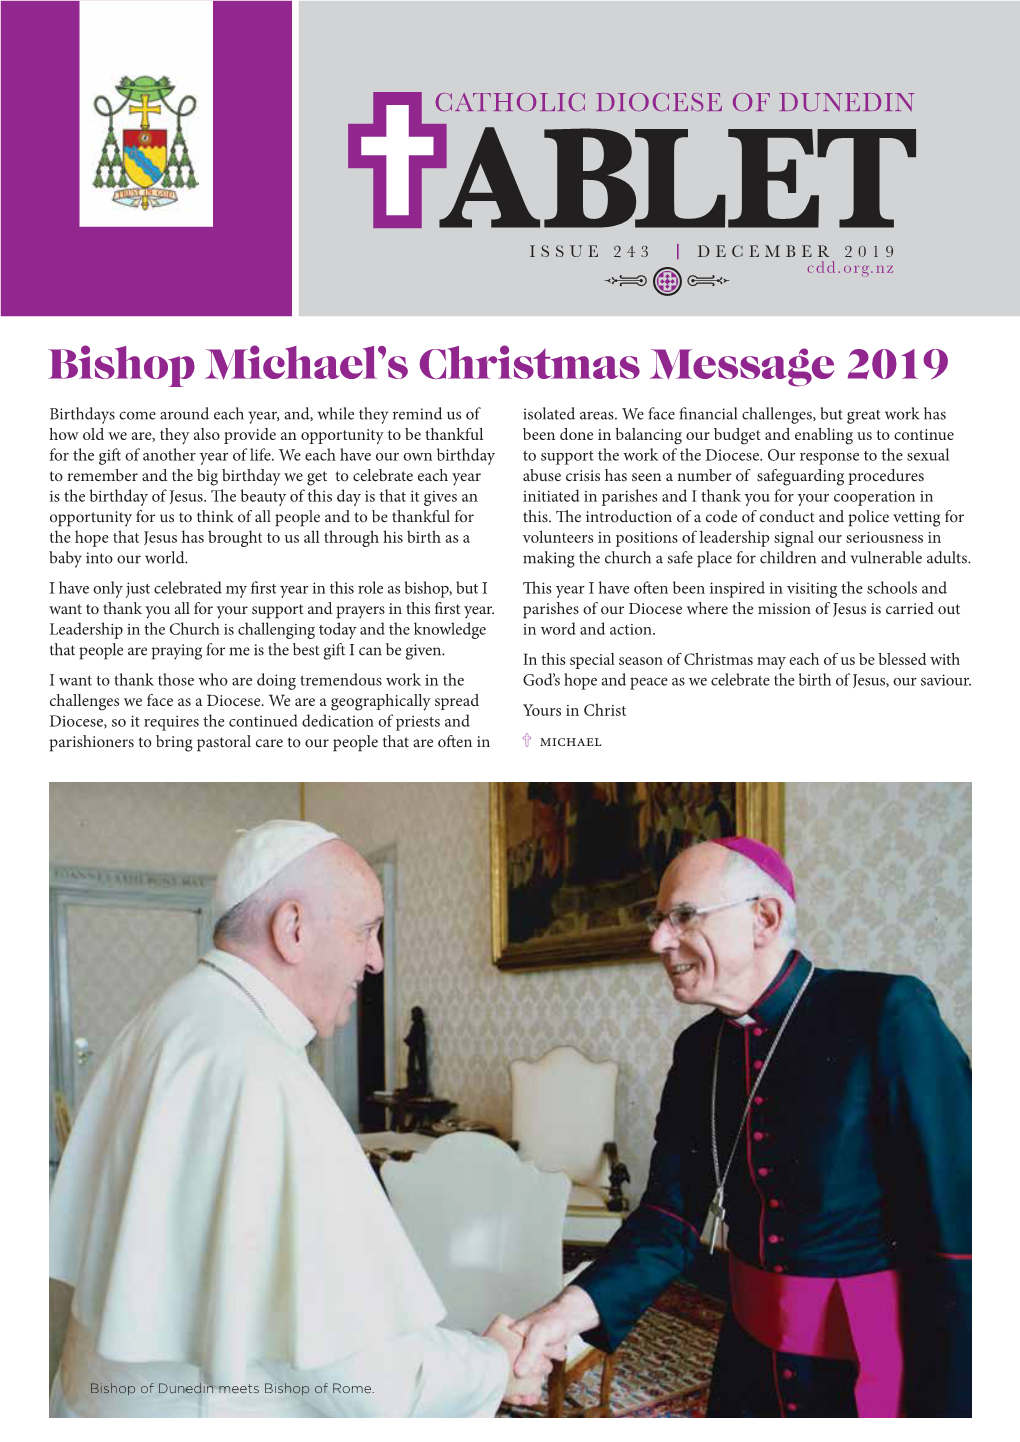 Bishop Michael's Christmas Message 2019